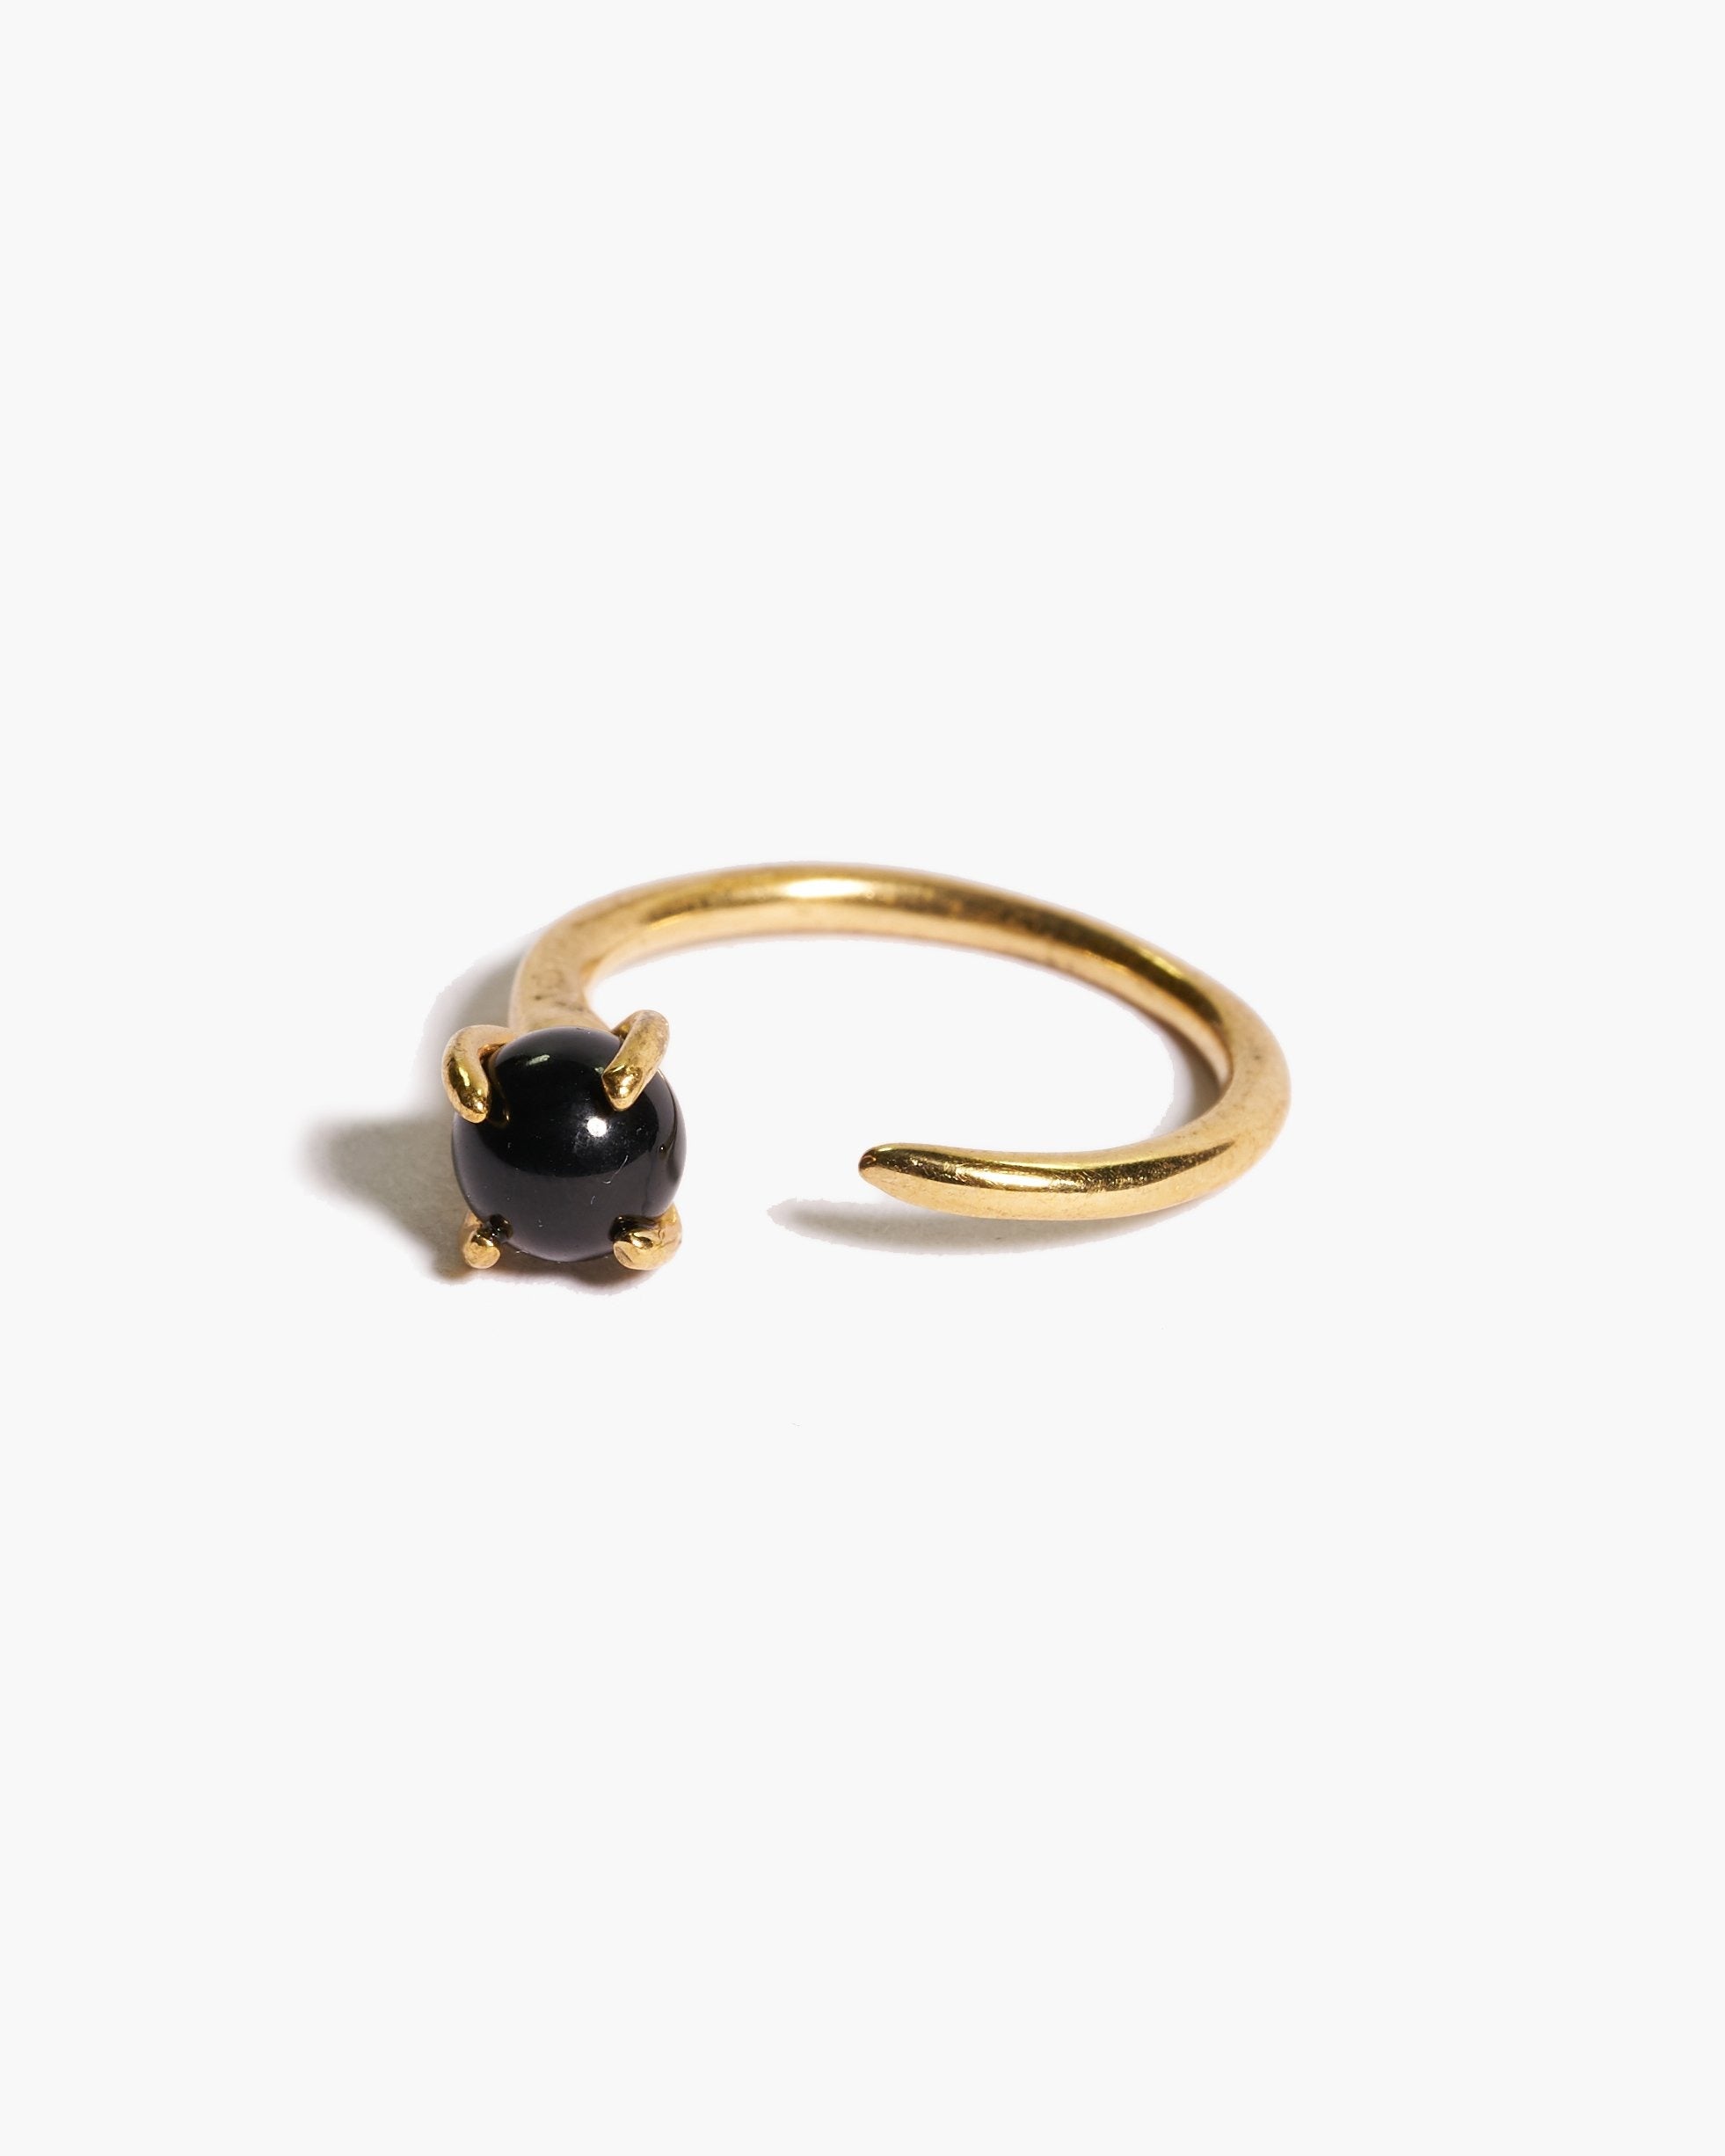 Odette Klint Ring in Brass with Blue Onyx